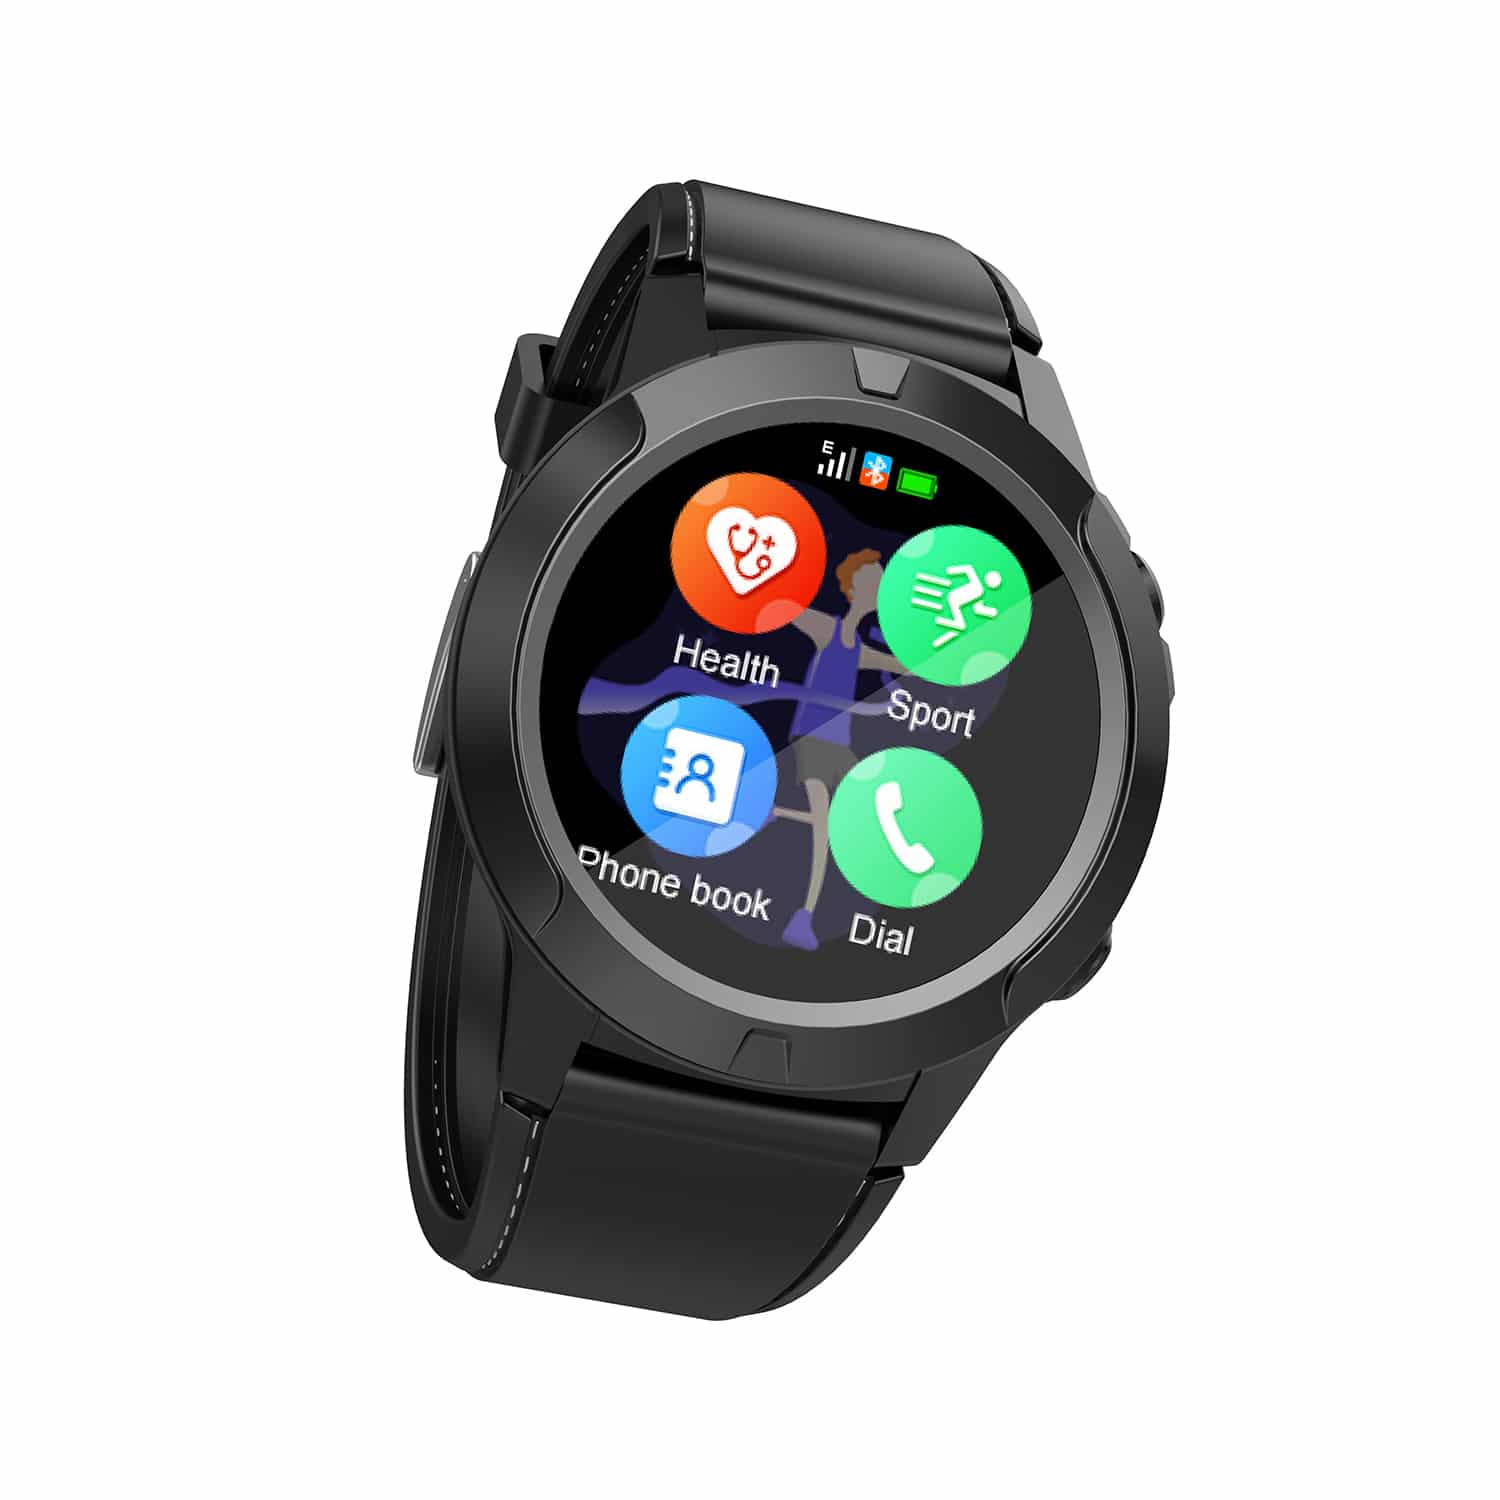 HAVIT M9001C GPS Smart Watch, IP68 Waterproof, Multi-Motion Modes